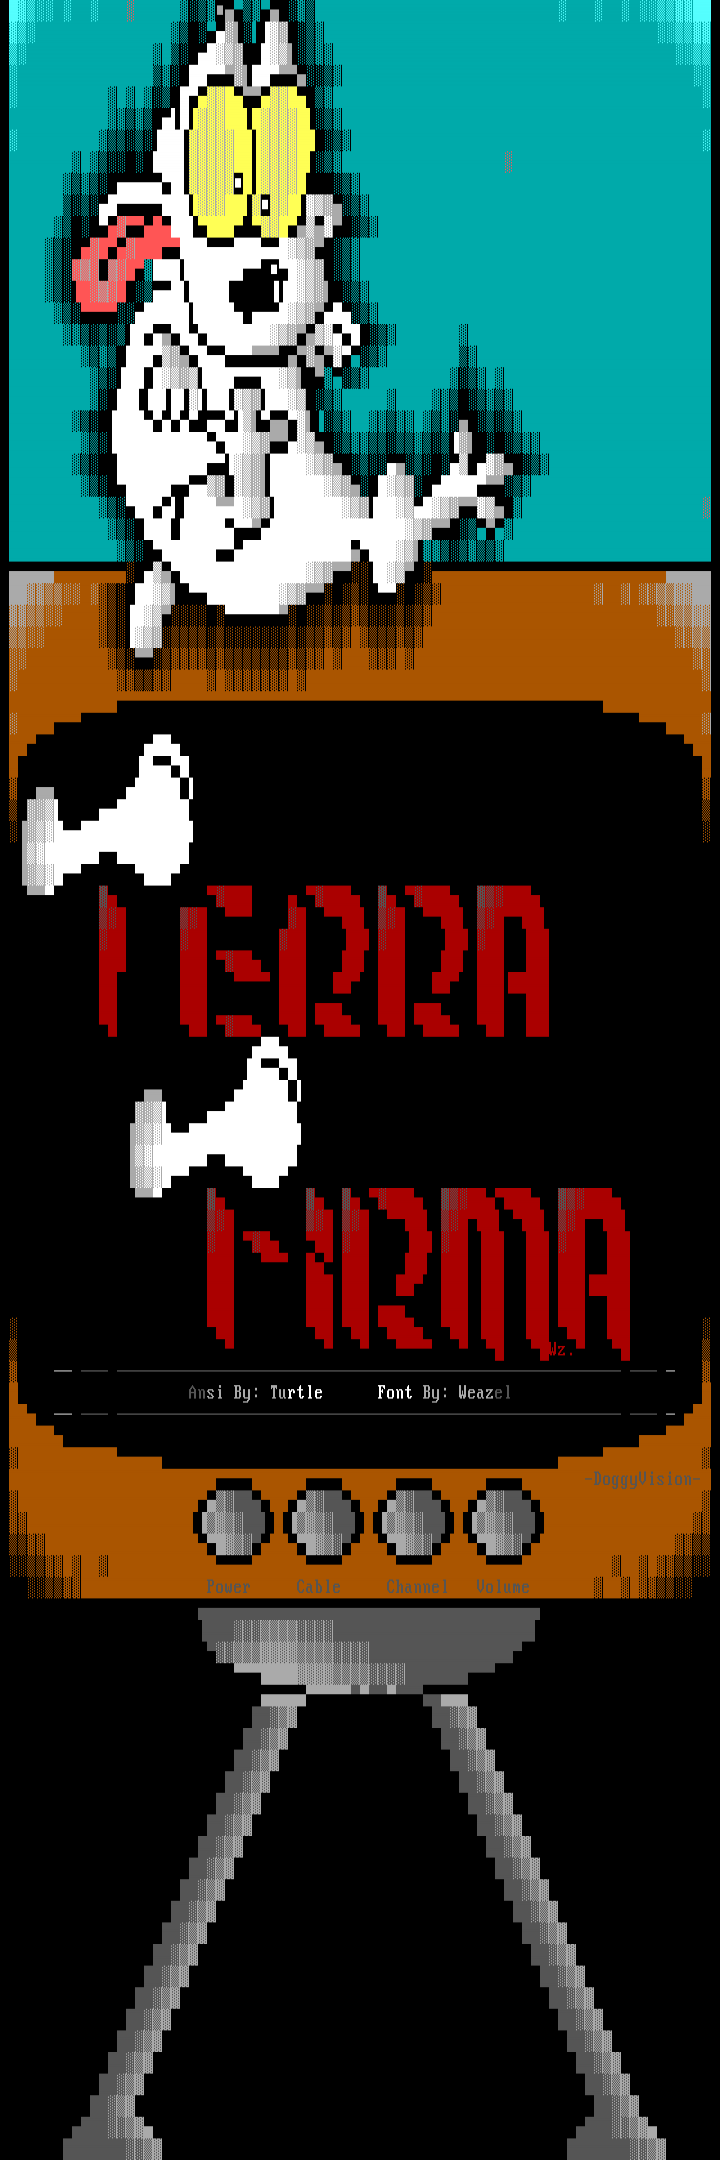 Terra Firma by Multiple Artists